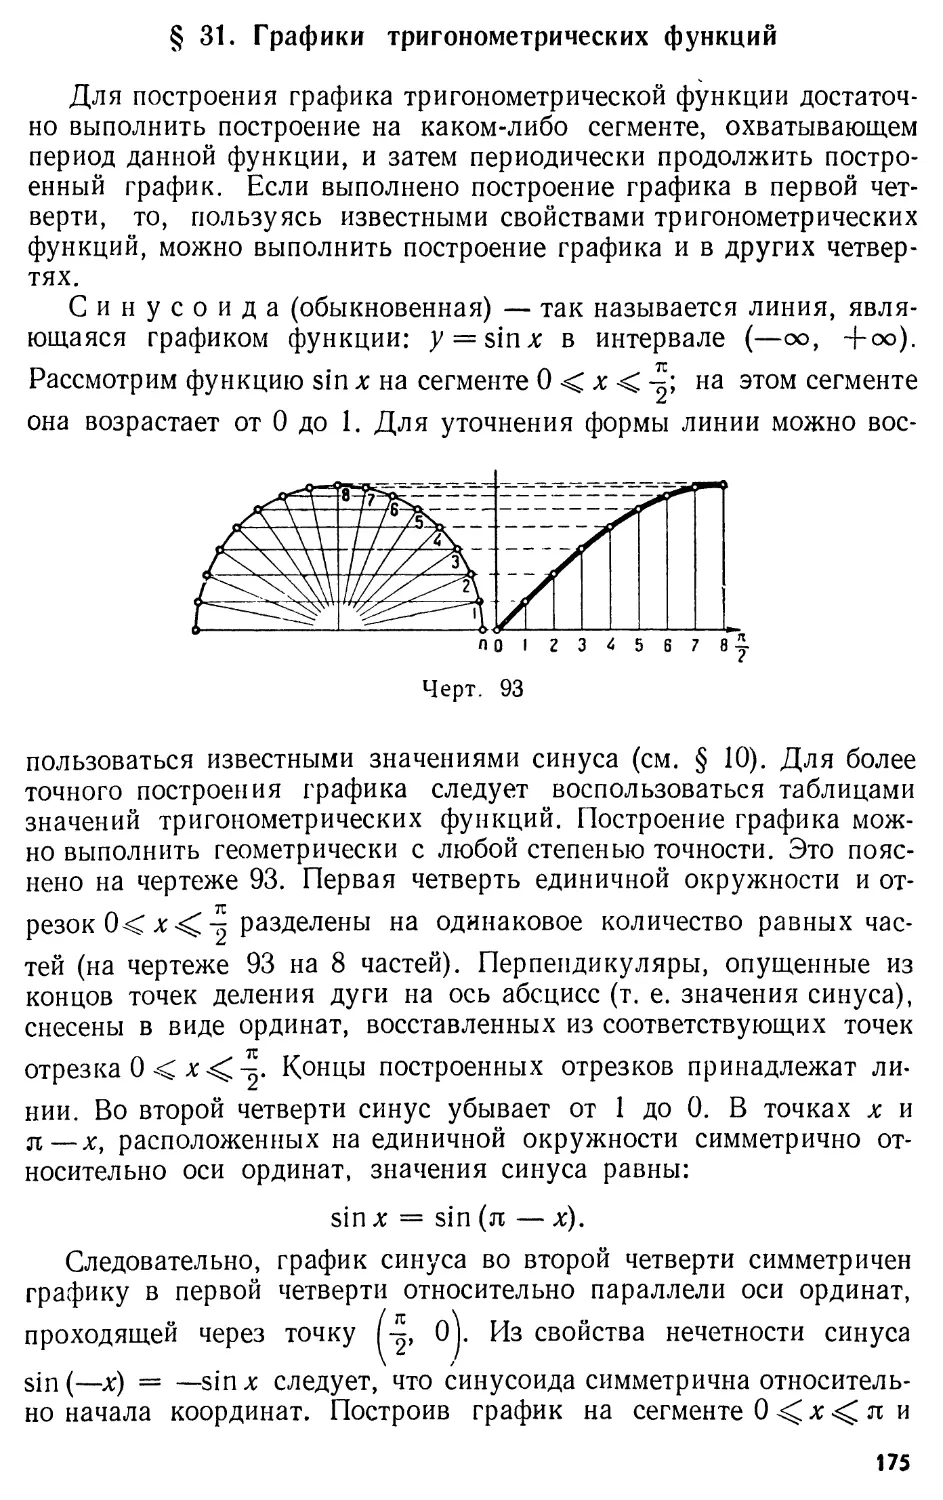 § 31. Графики тригонометрических функций